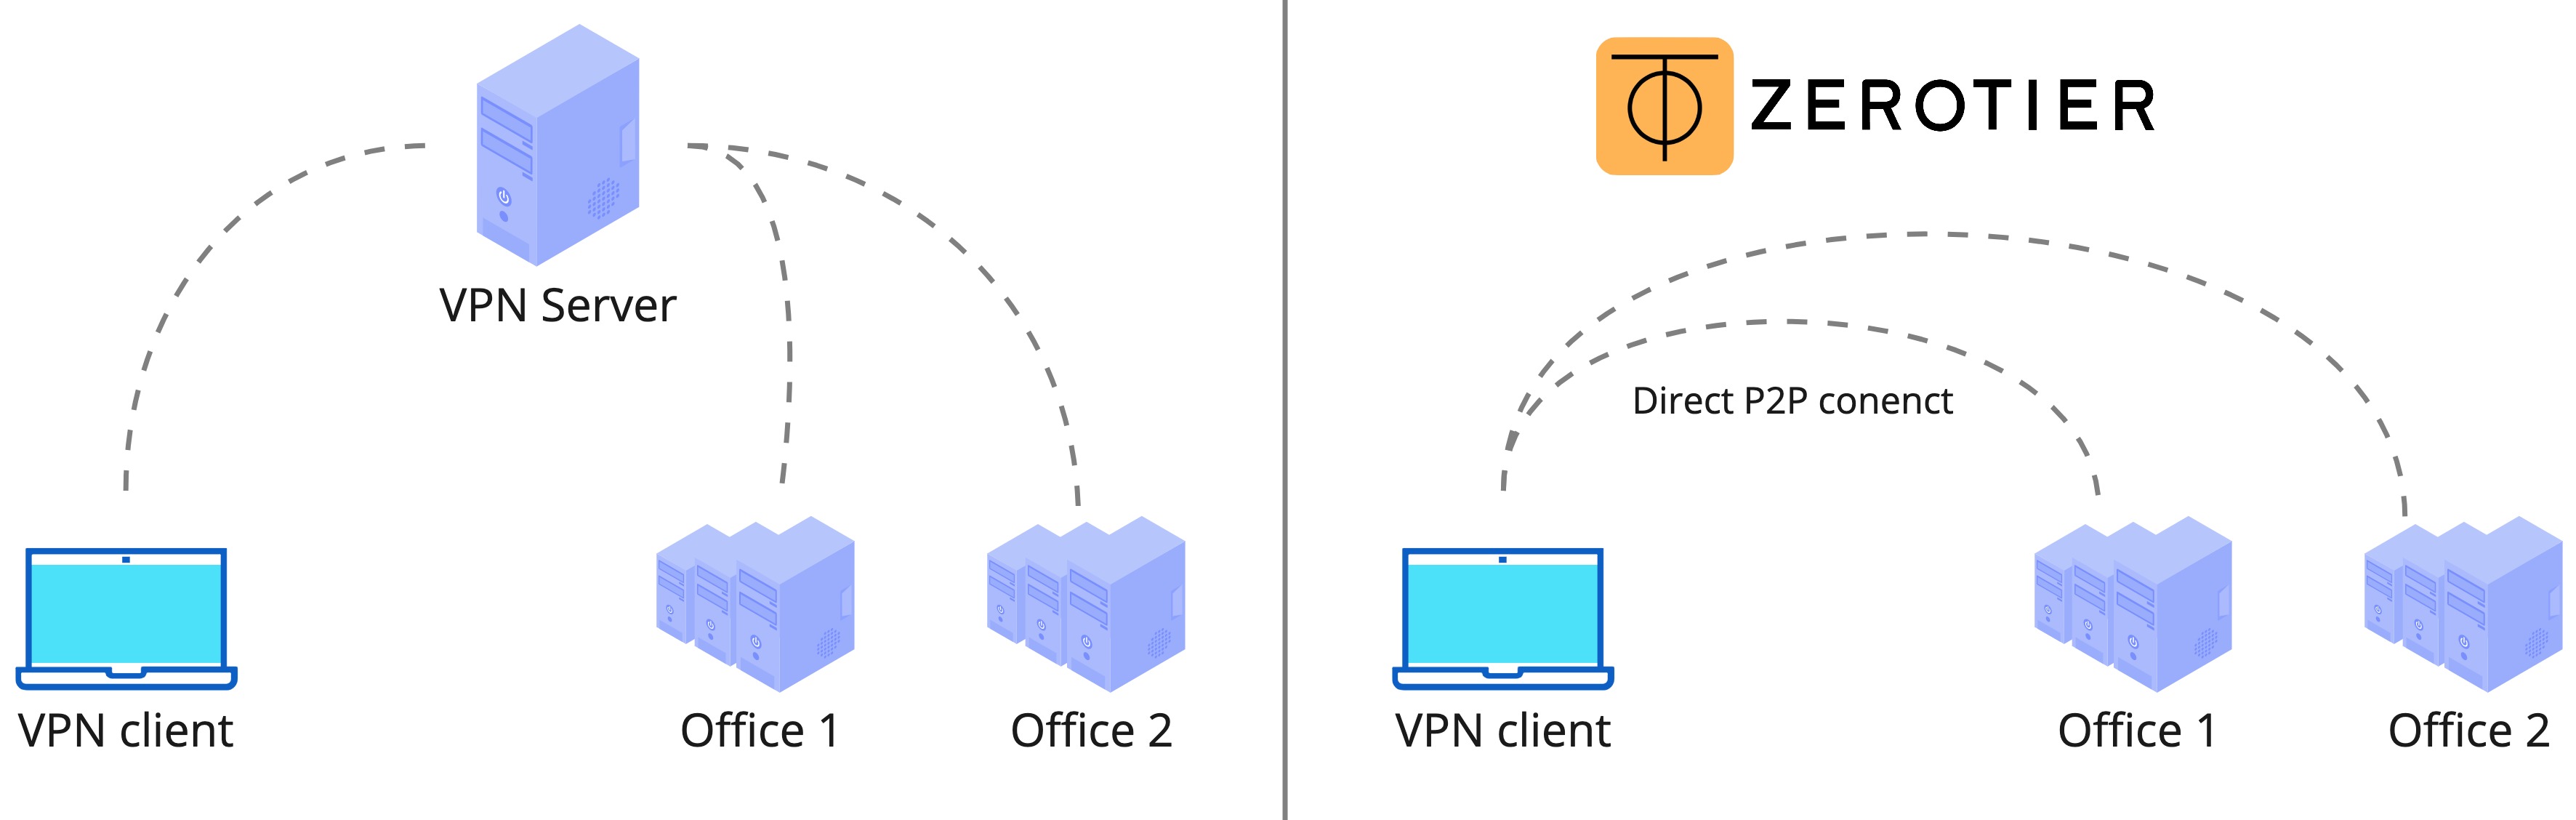 В ZeroTier подключения внутри VPN сети происходят напрямую